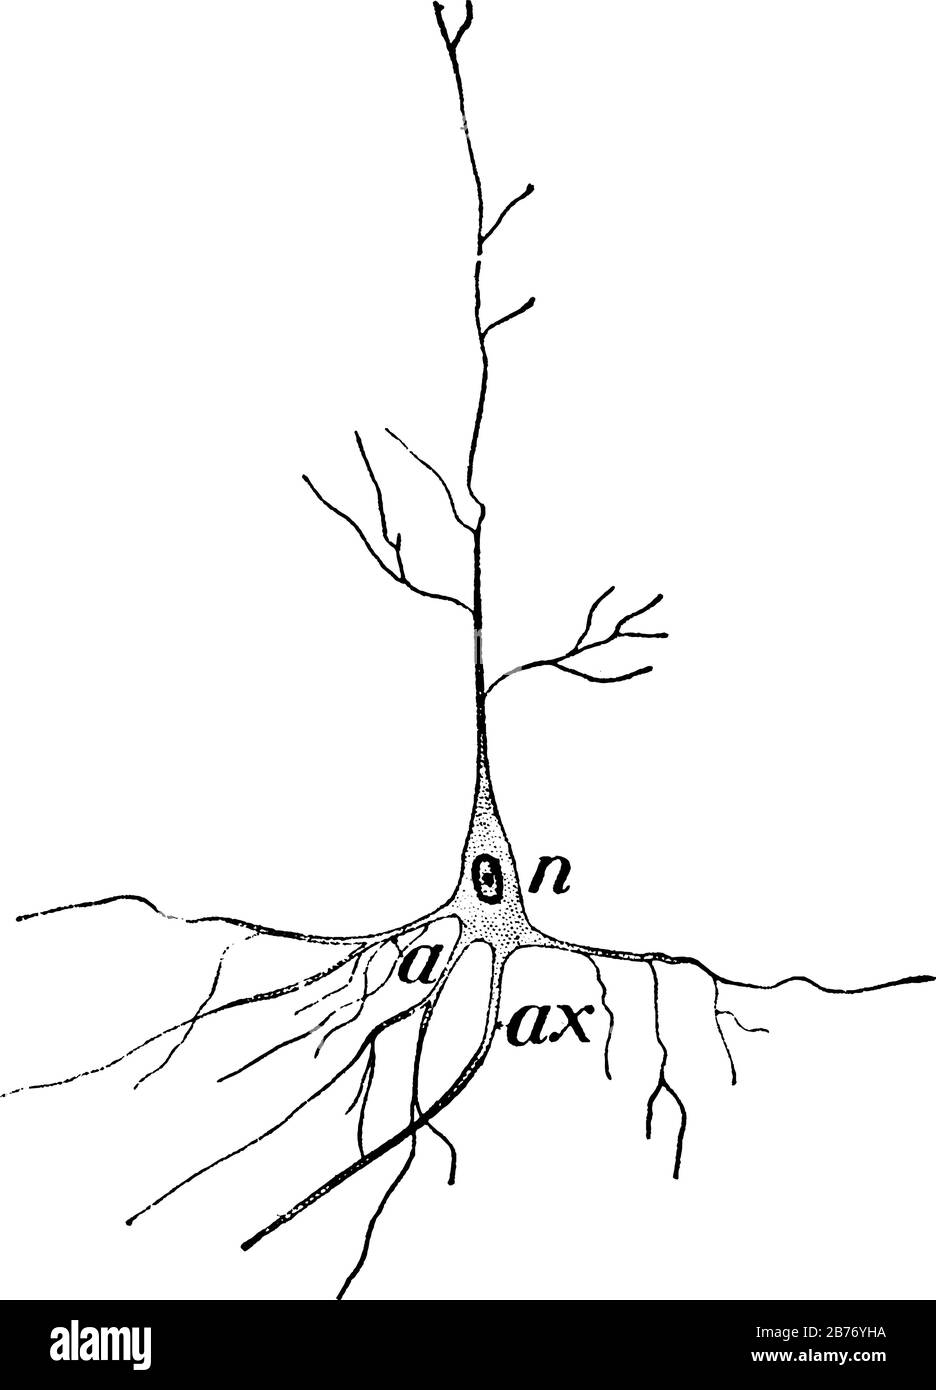 Es handelt sich um ein Bild der Nervenzelle, des Kerns des Nervus, das hier gezeigt wird und drei verschiedene Bilder in der darin befindlichen Nervenzelle, klassische Strichzeichnung oder Gravur zeigt Stock Vektor